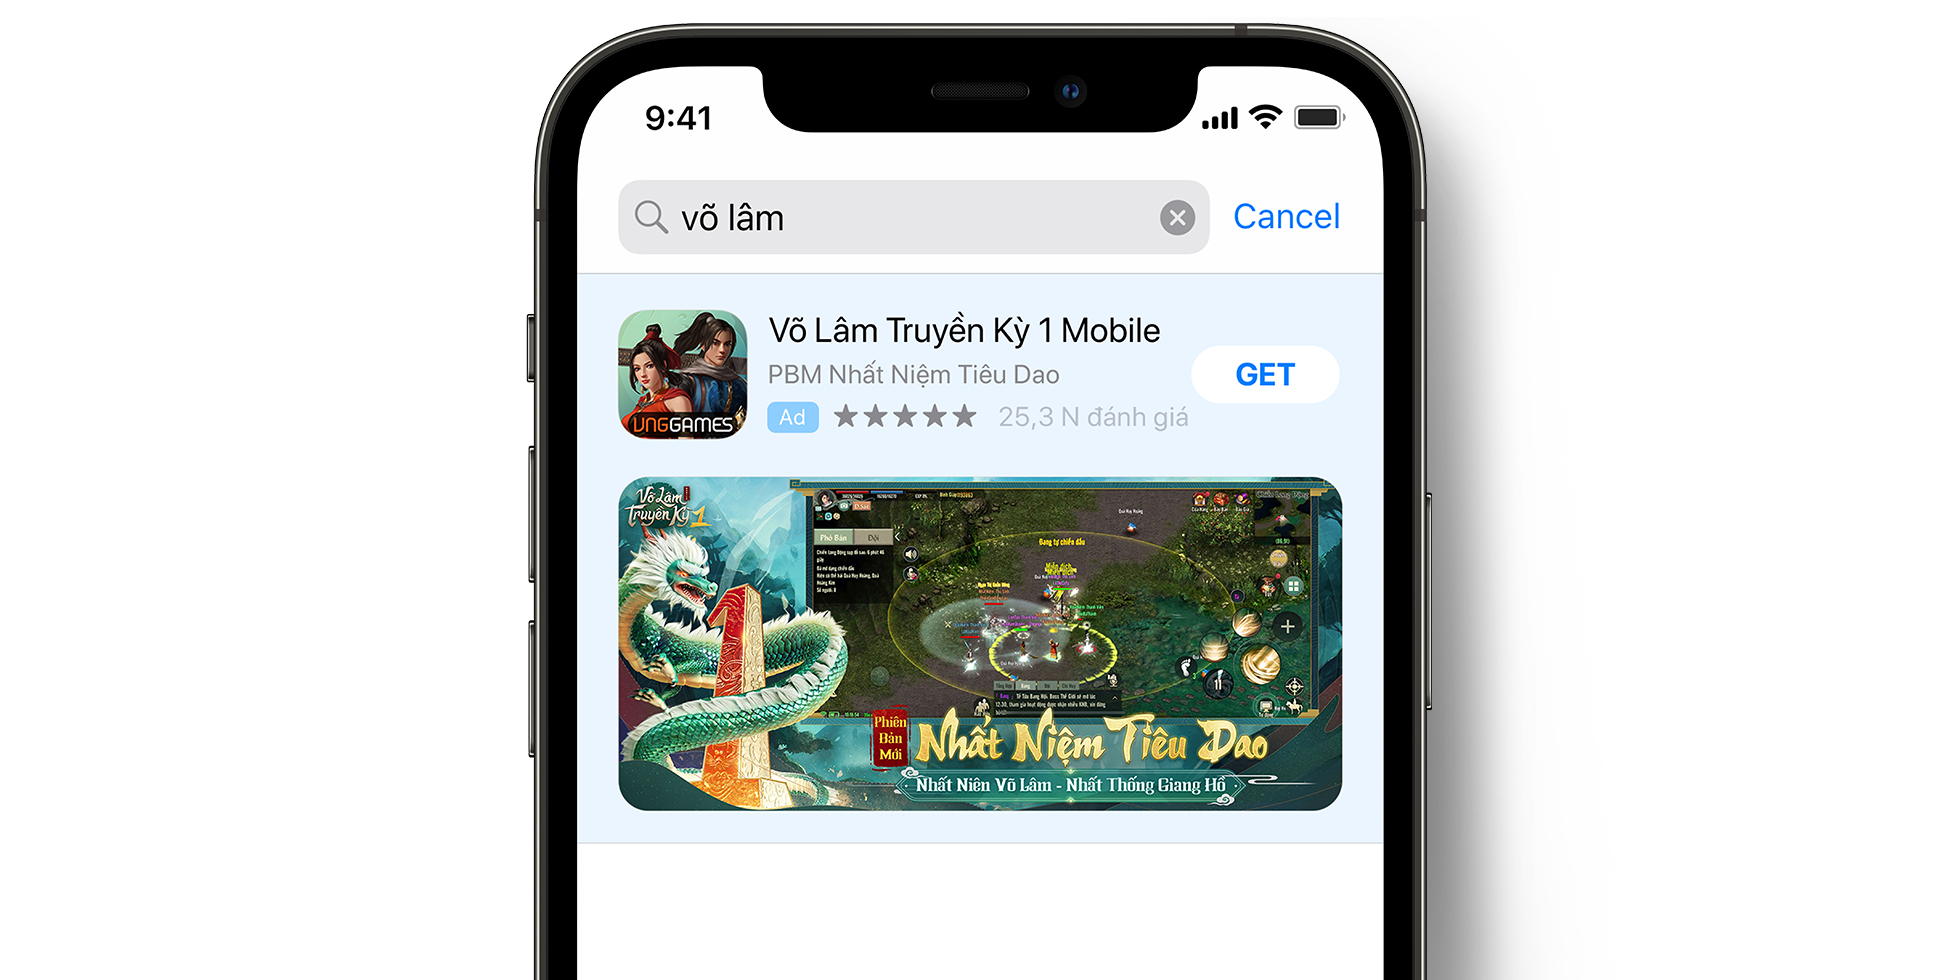 Annonce VLTK 1 Mobile dans l’App Store